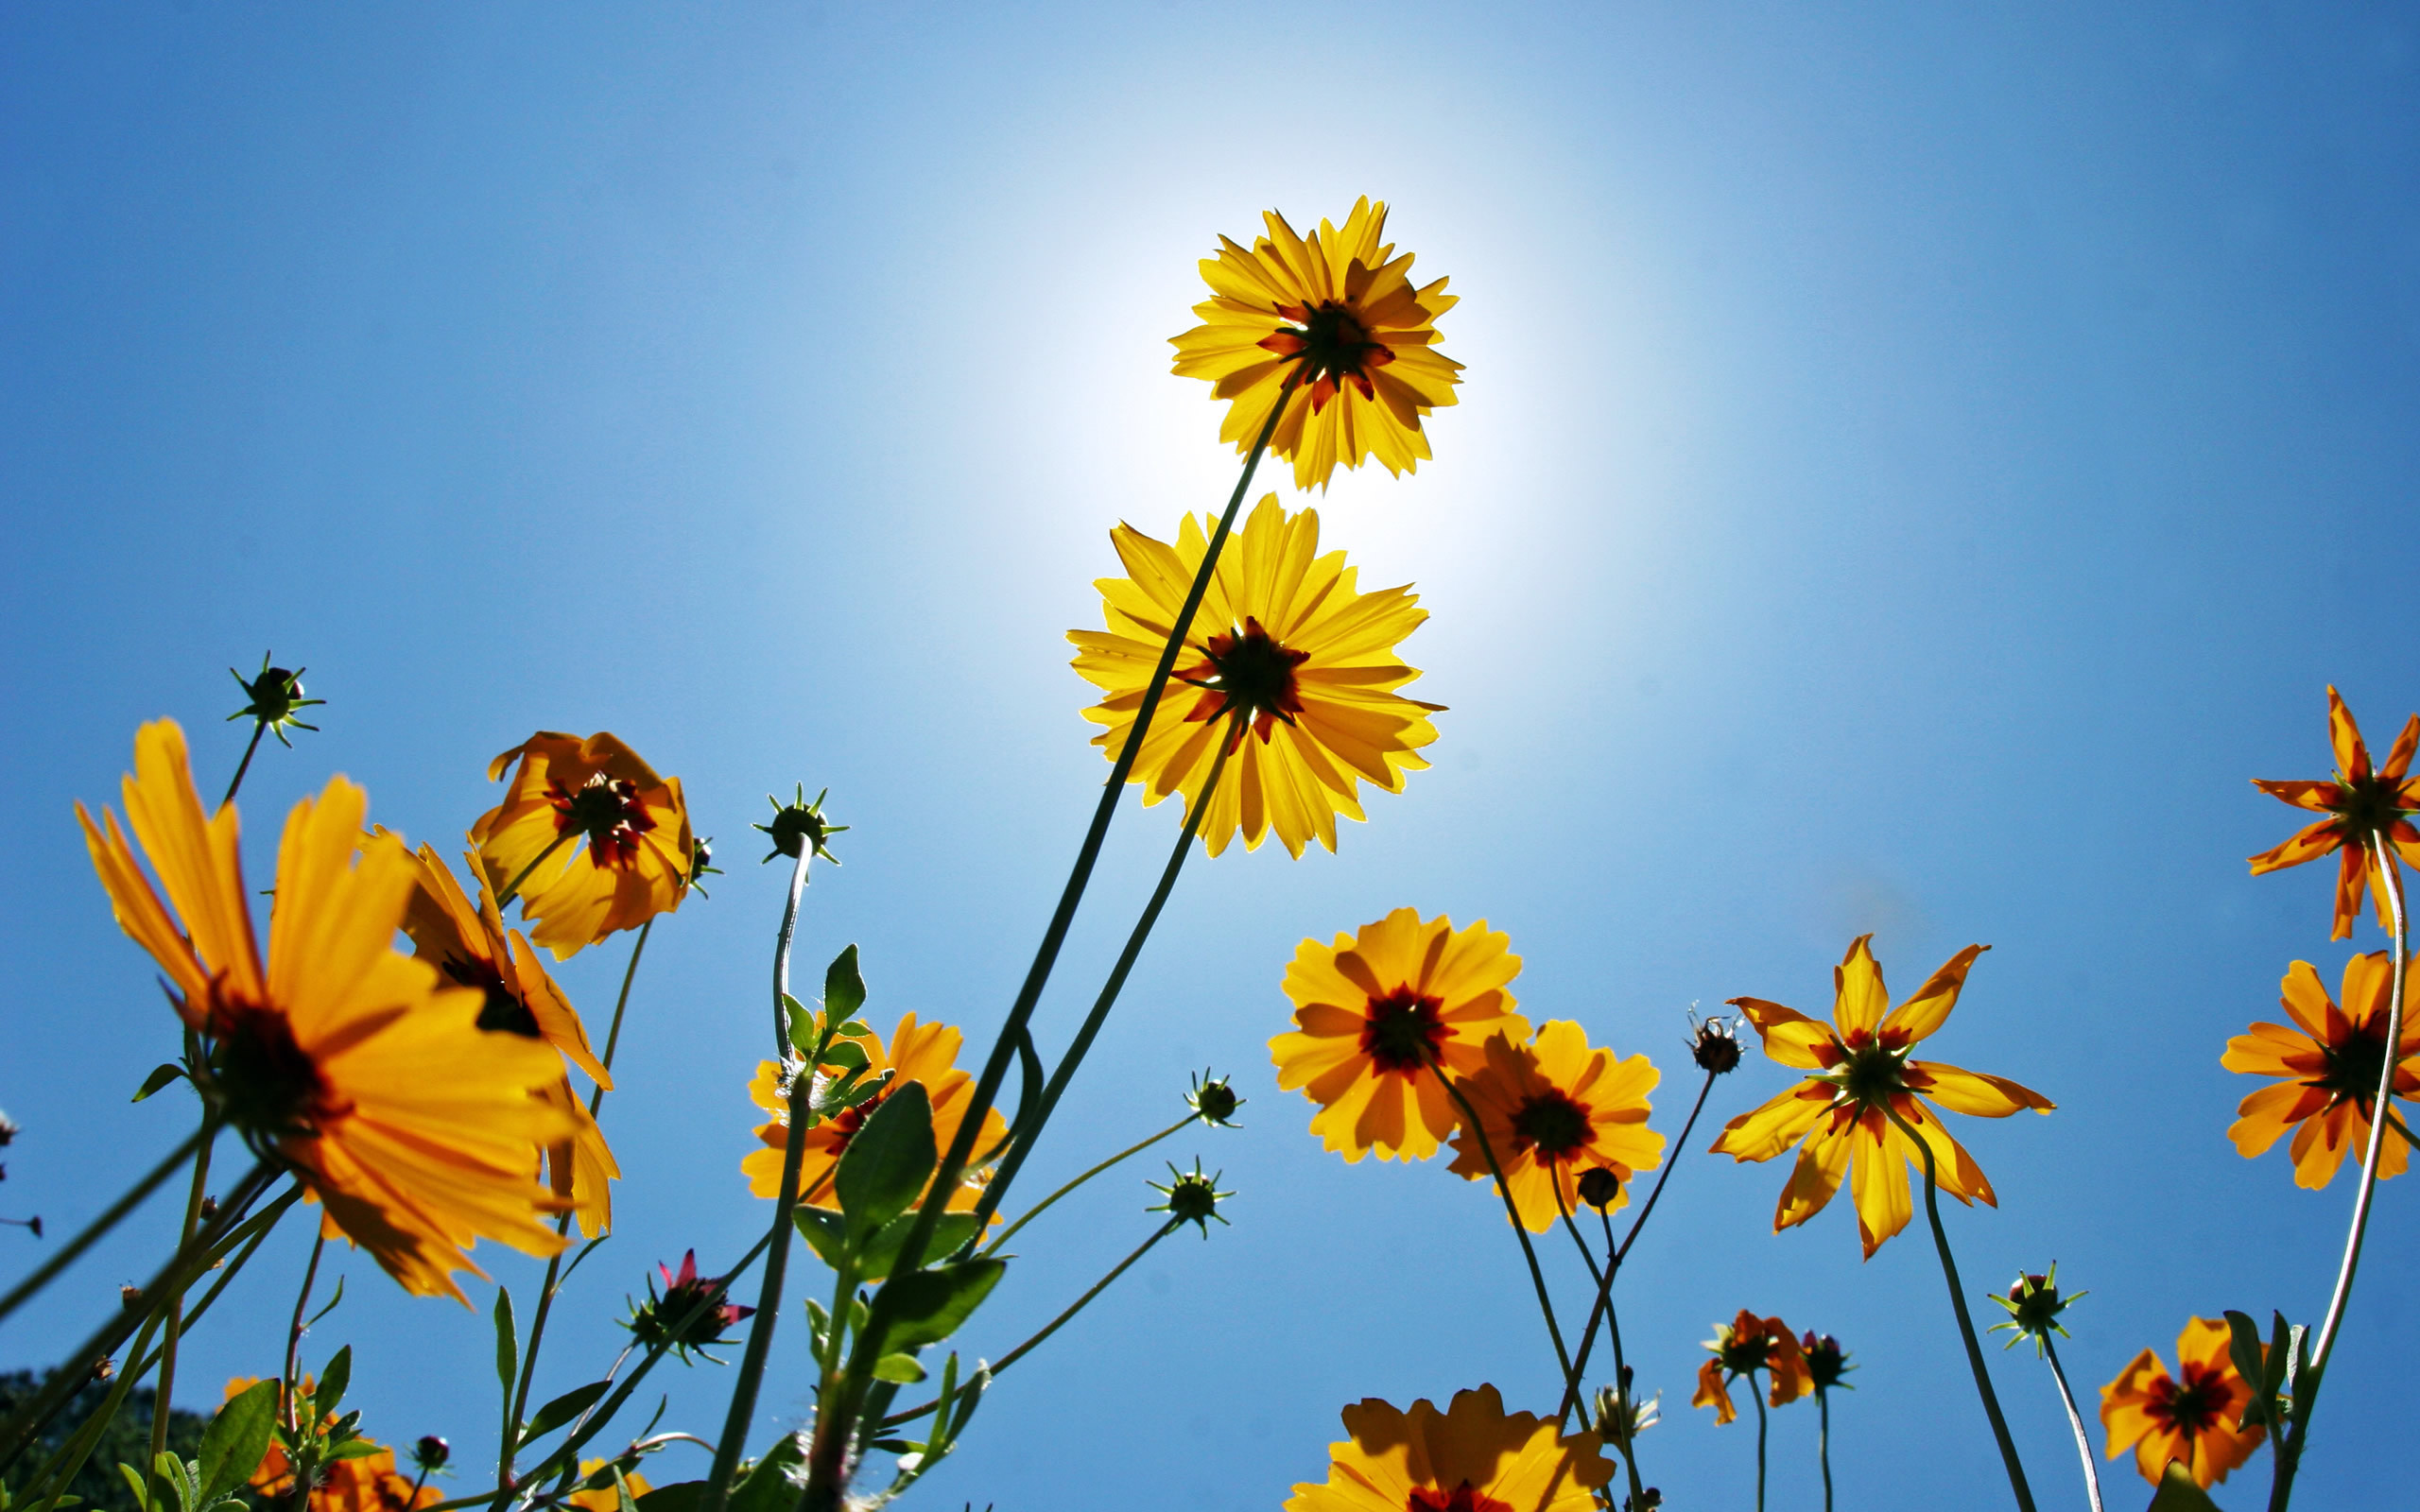 عکس گل آفتاب گردان با کیفیت بالا برای چاپ بر روی تابلو و تخته شاسی